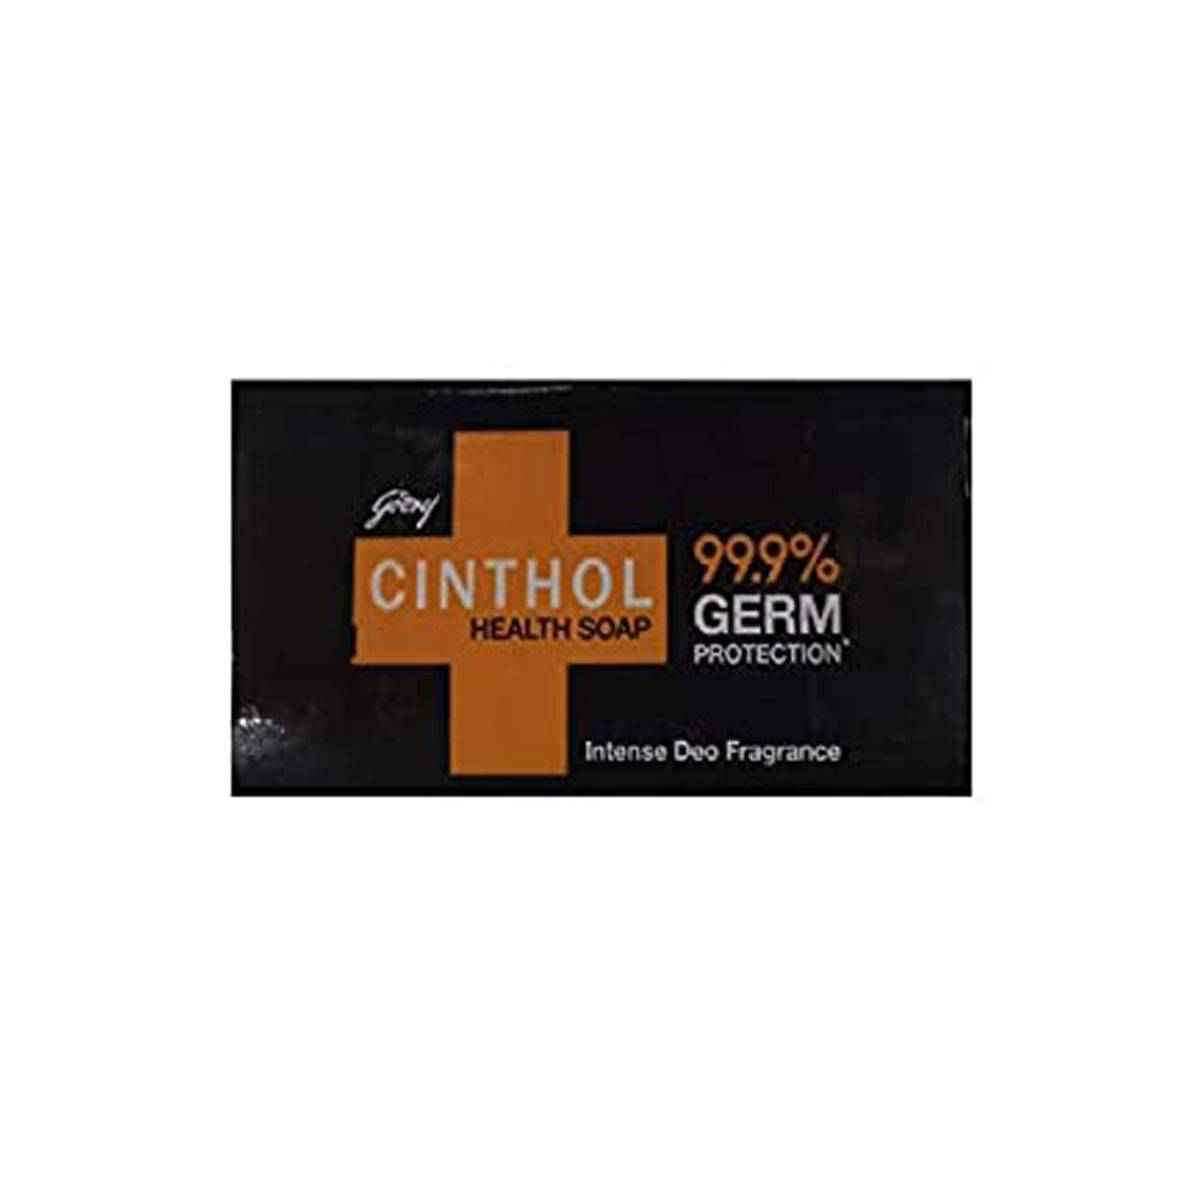 Cinthol Health Soap 100g